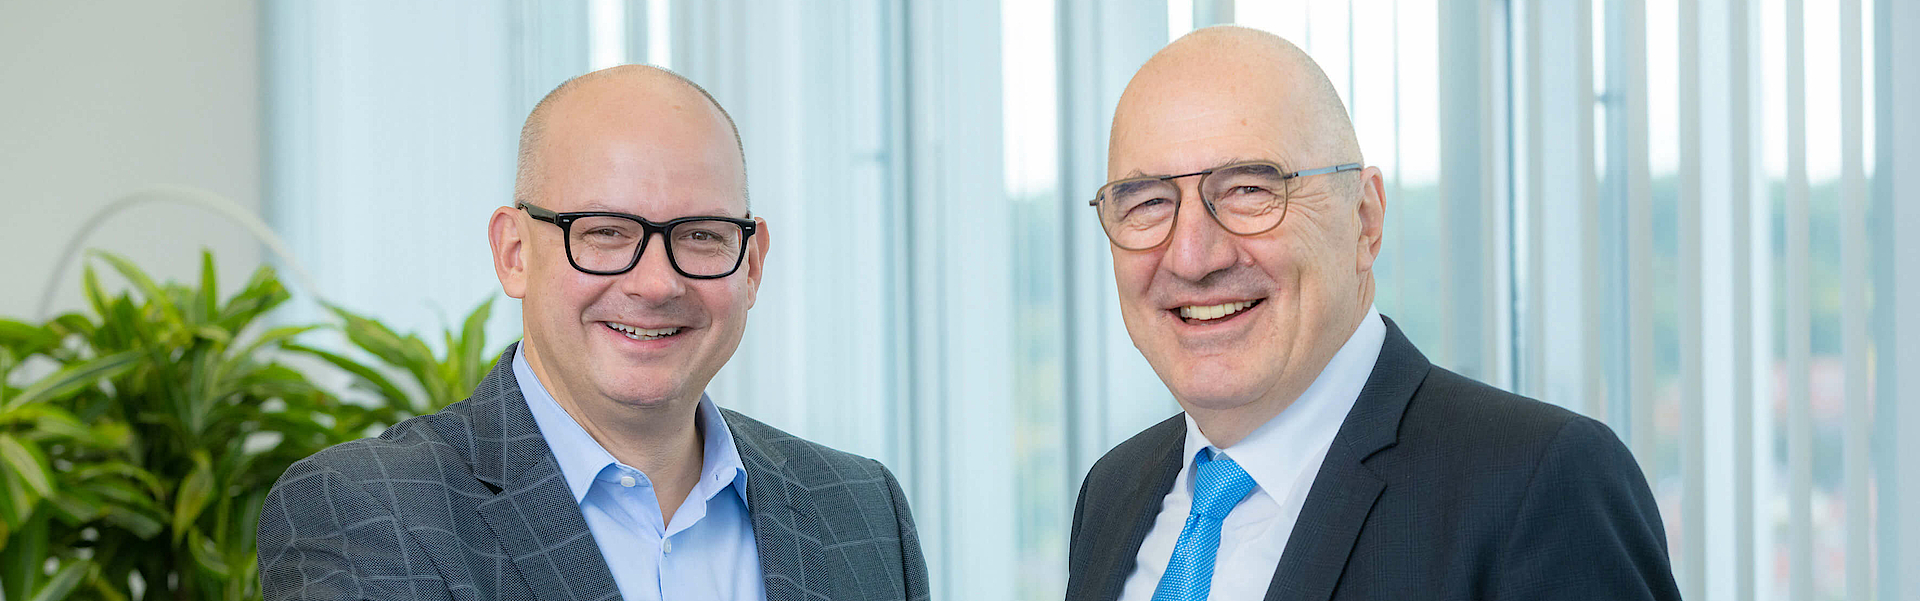 Links seht der neue Vorstand der mhplus, Heiko Kastner. Rechts steht der alte Vorstand der mhplus, Winfried Baumgärtner. Beide reichen sich die Hand.